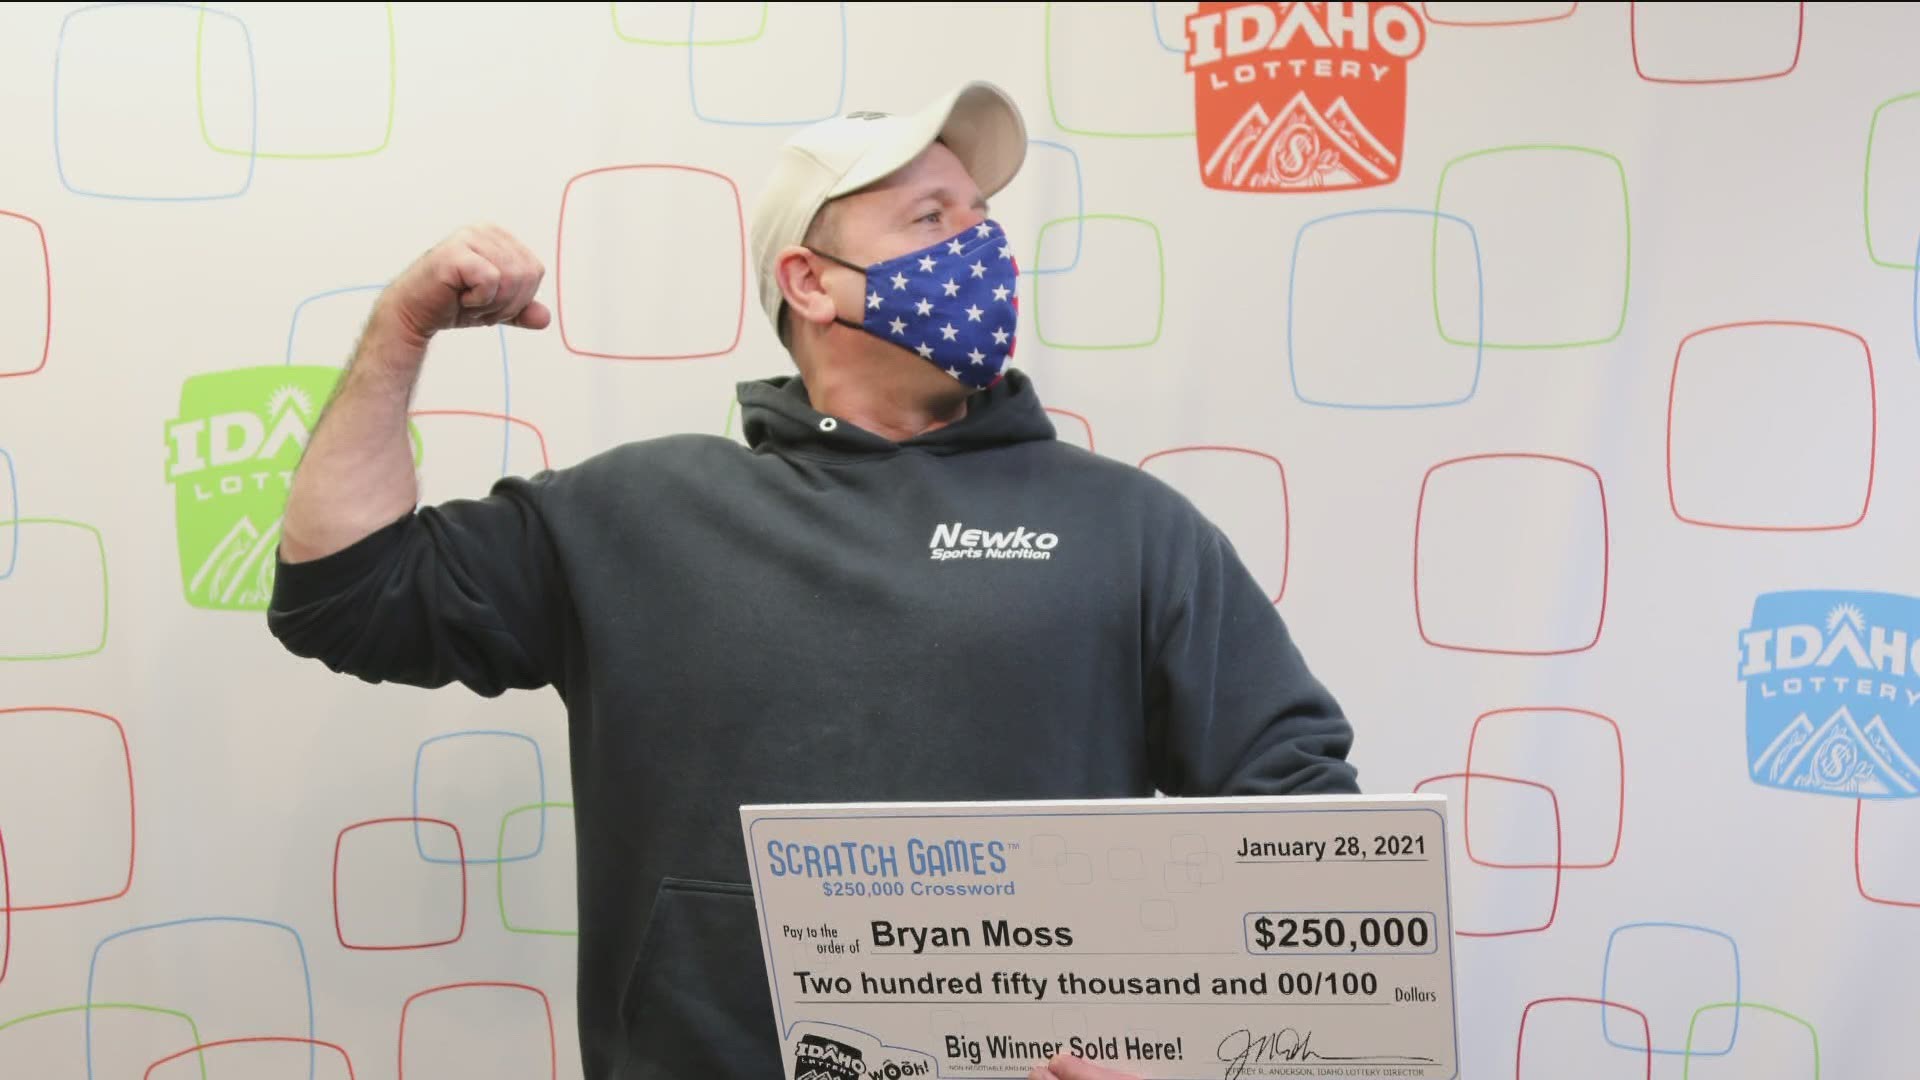 Bryan Moss won $250,000 on an Idaho Lottery scratch game.